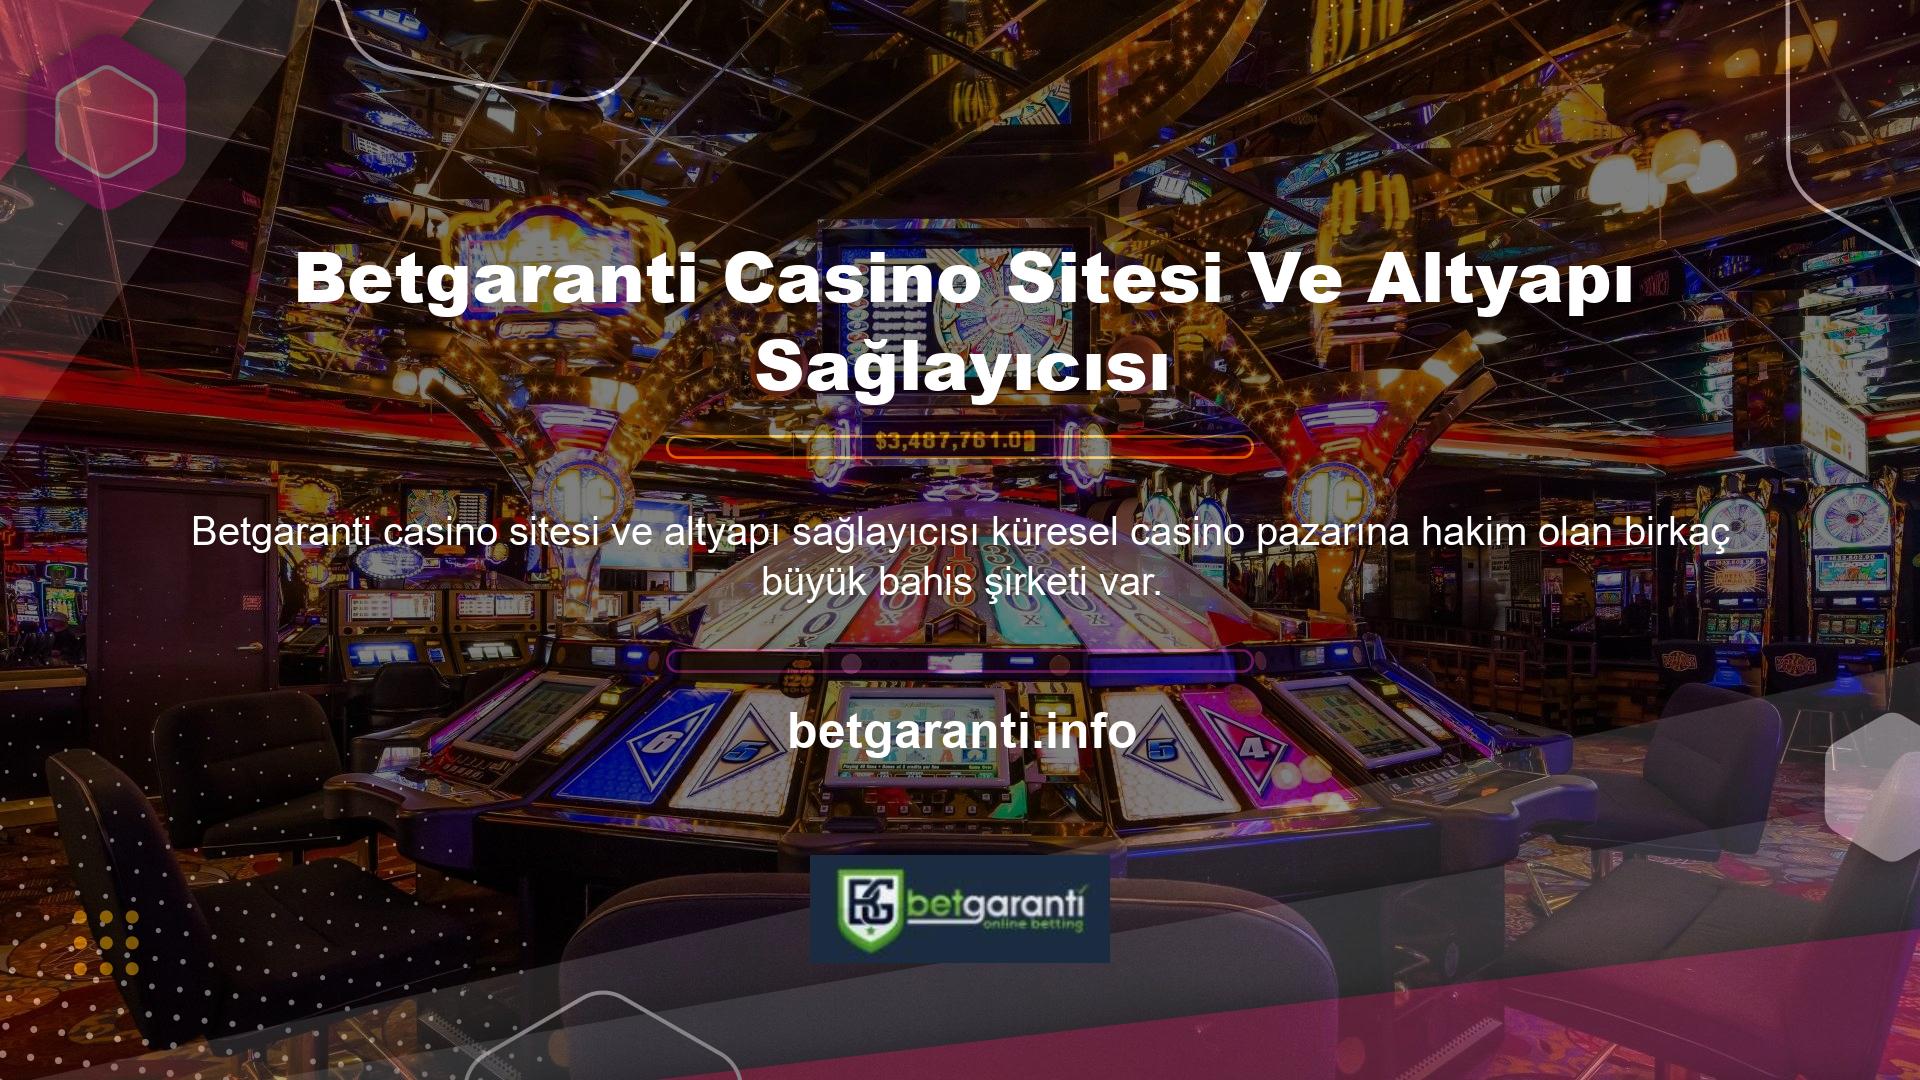 İlgili ücretler bu ofisler tarafından belirlenir ve altyapı sağlayıcı bu katsayıları anlaşmalı Betgaranti casino sitelerine ve altyapı sağlayıcı lokasyonlarına dağıtır